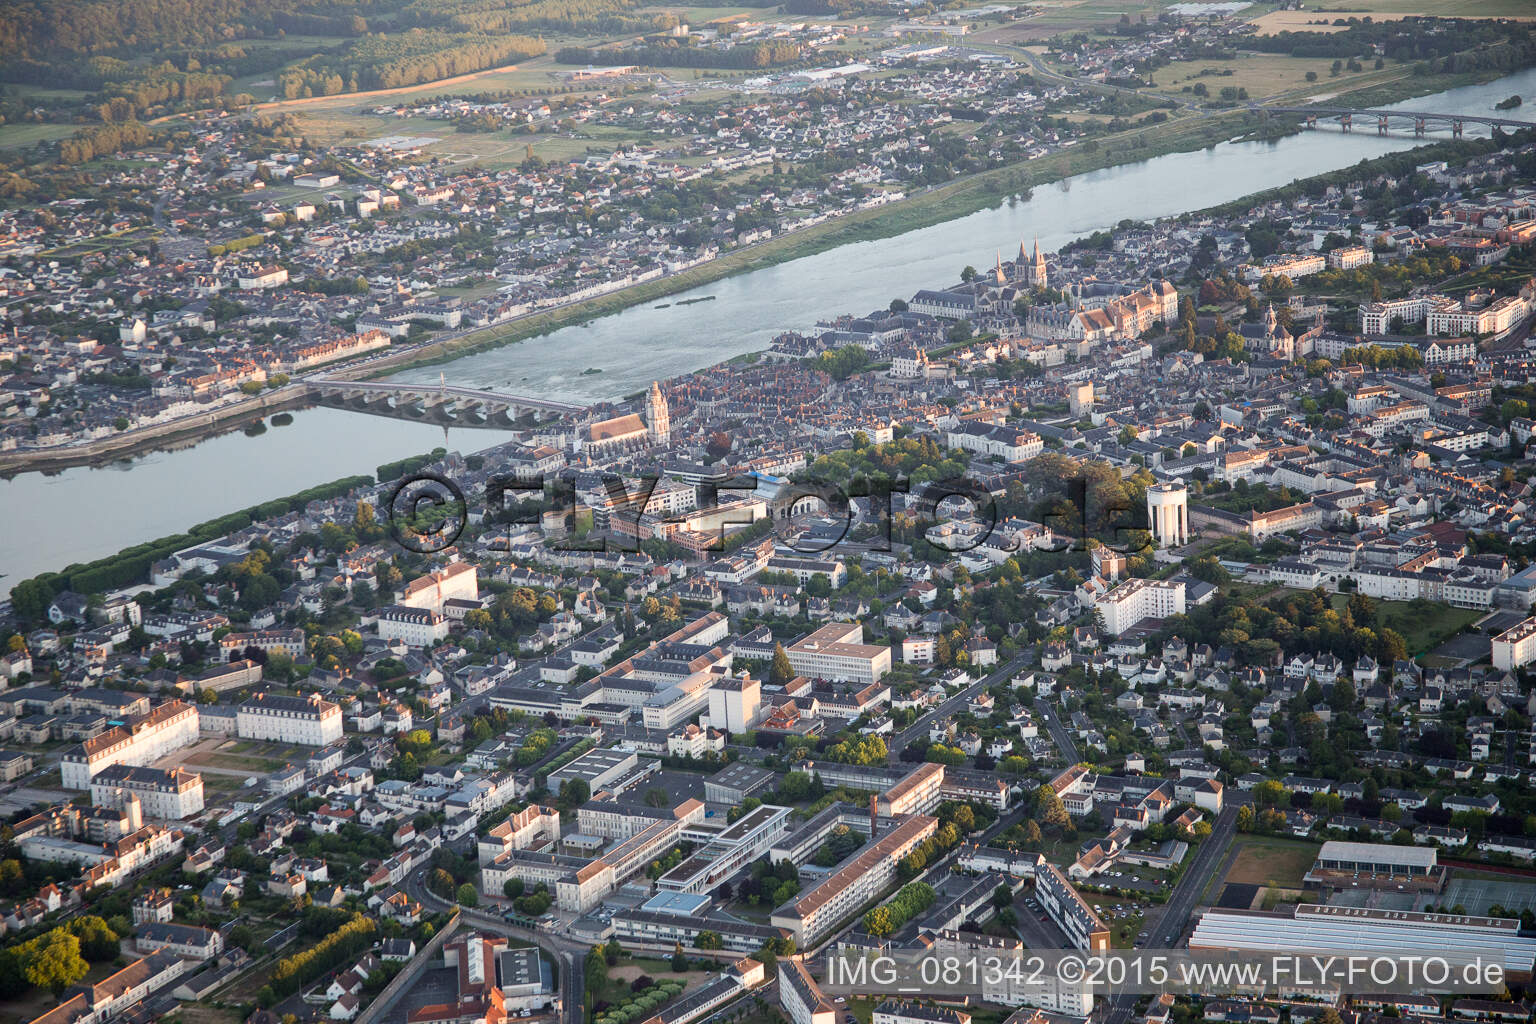 Vue oblique de Blois dans le département Loir et Cher, France